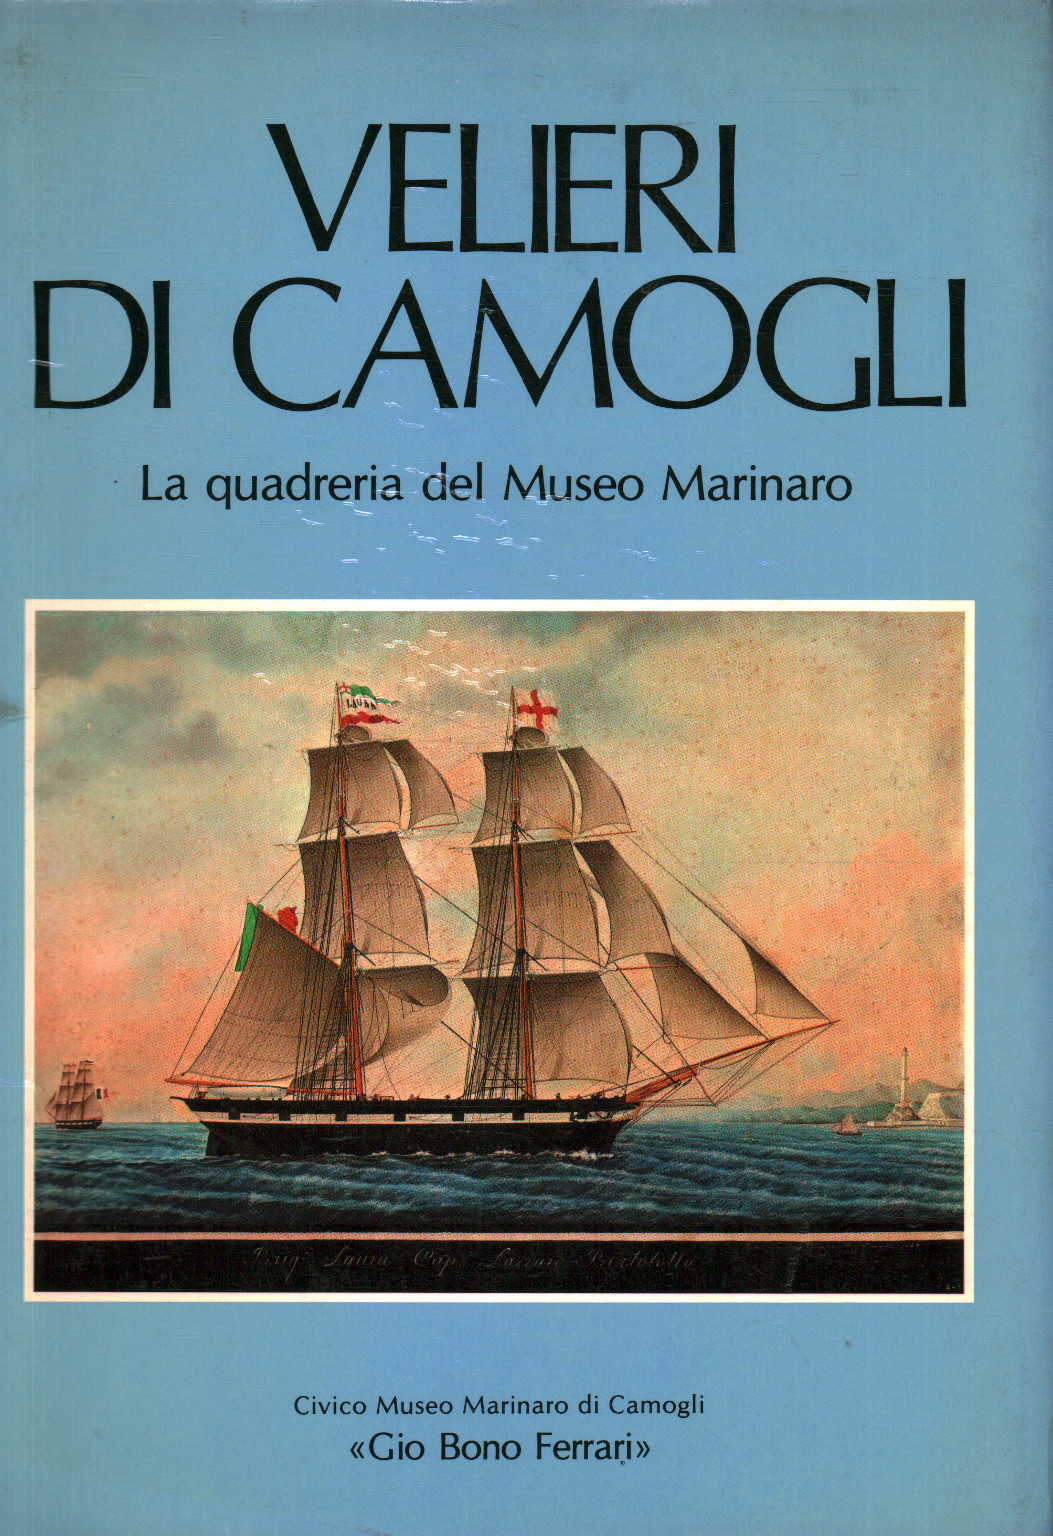 Velieri di Camogli, Civico Museo Marinaro di Camogli «Gio Bono Ferrari»